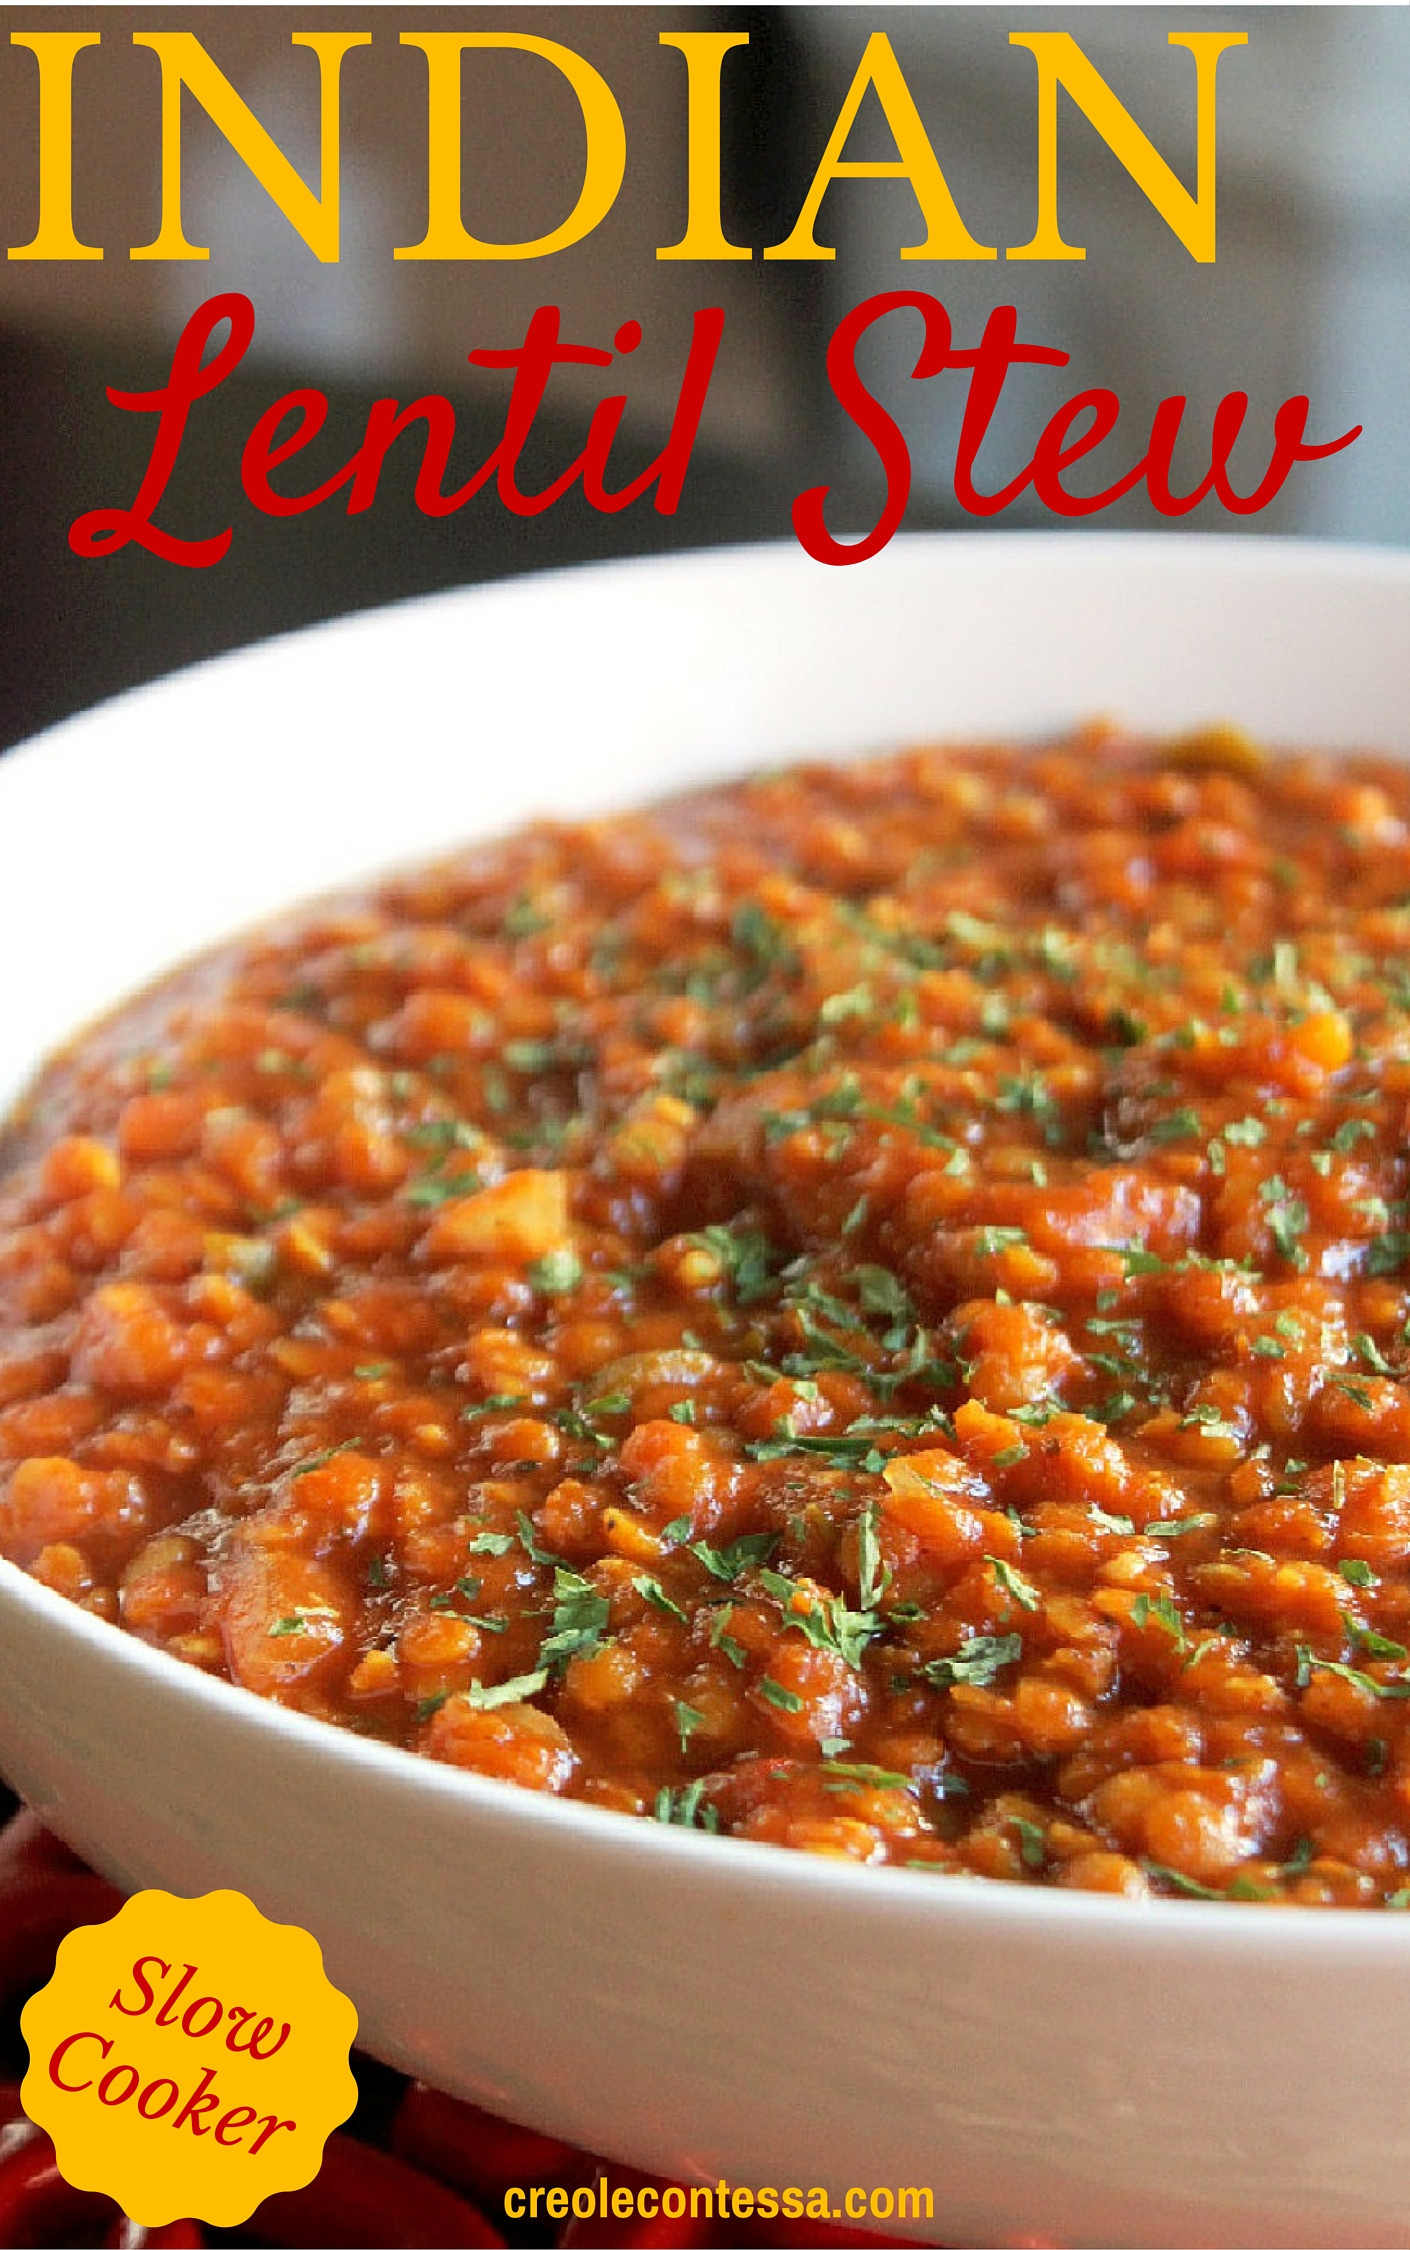 Slow Cooker Indian Vegetarian Recipes
 slow cooker lentil recipes ve arian